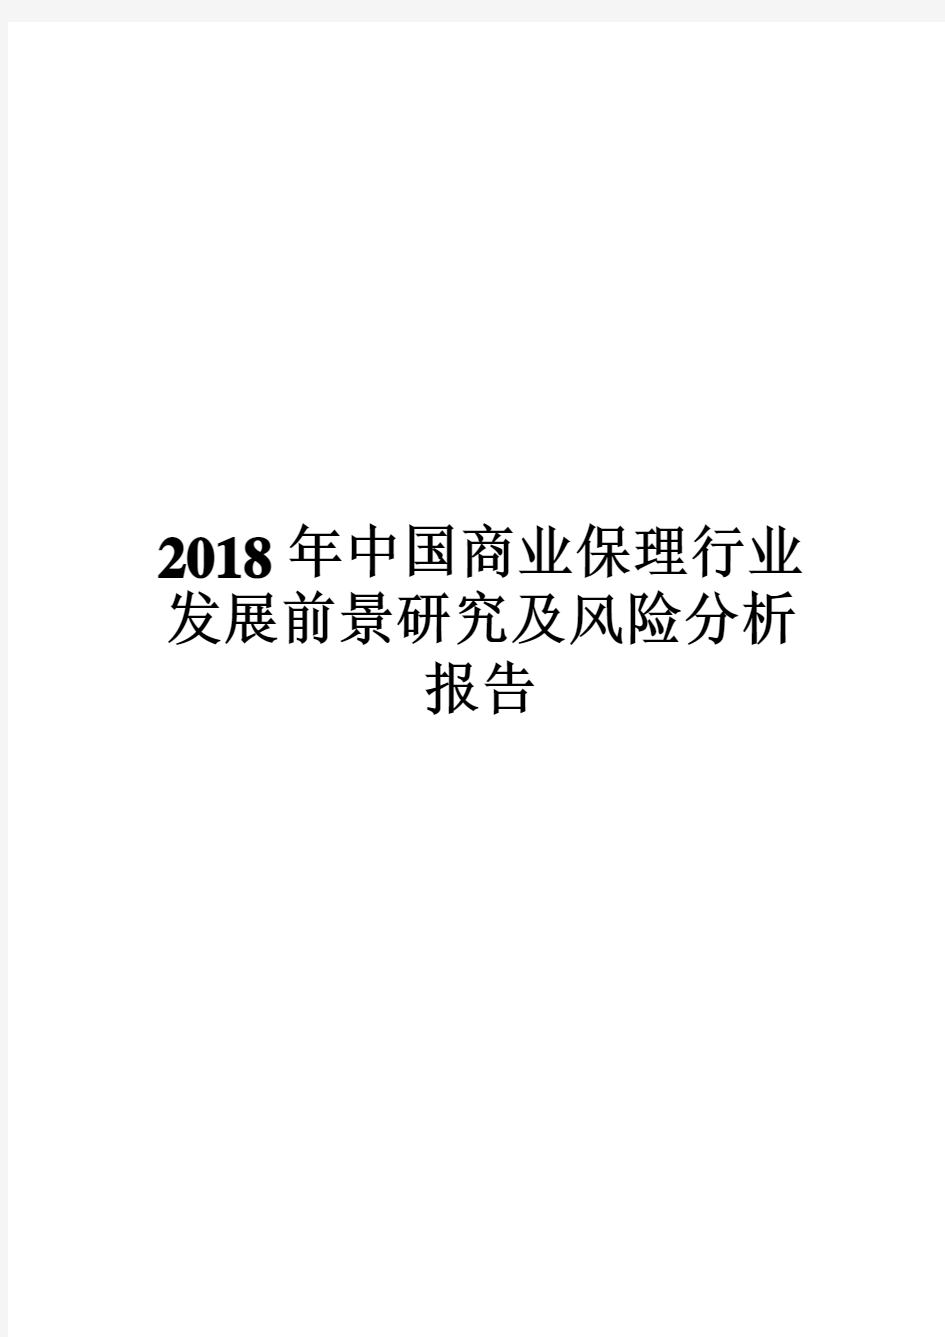 2018年中国商业保理行业发展前景研究及风险分析报告